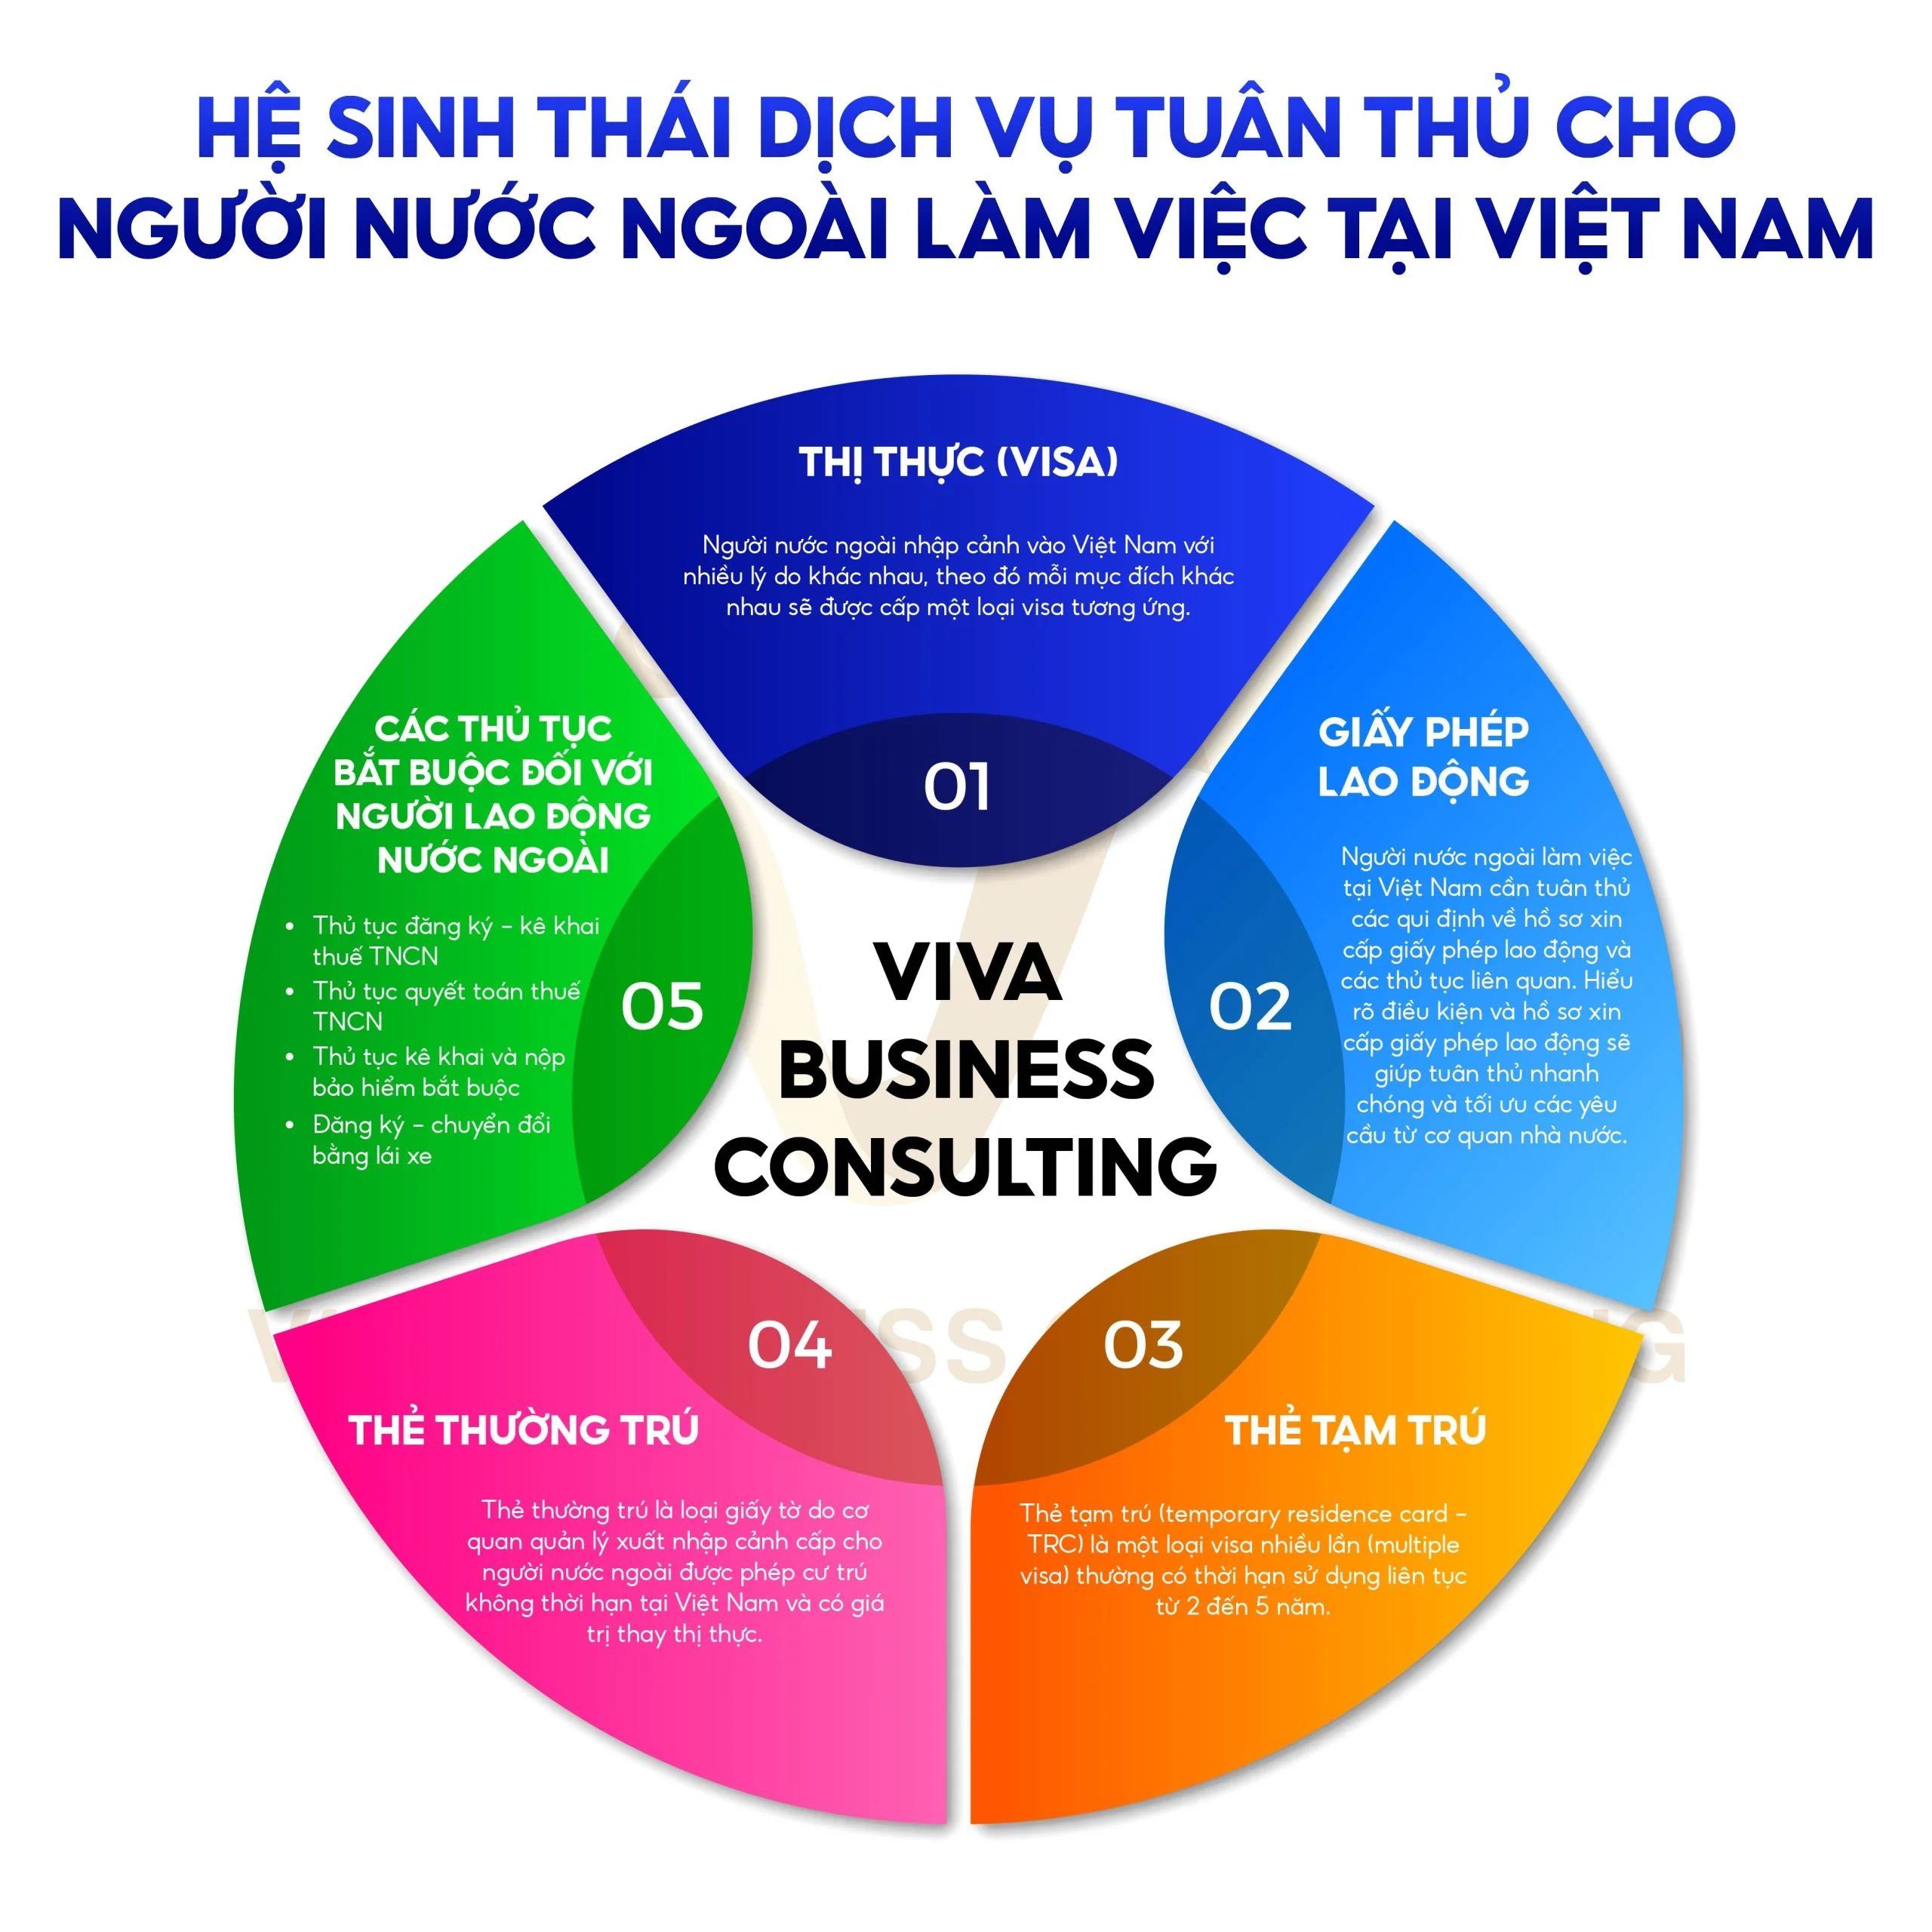 Hệ sinh thái dịch vụ tuân thủ cho người nước ngoài tại Việt Nam